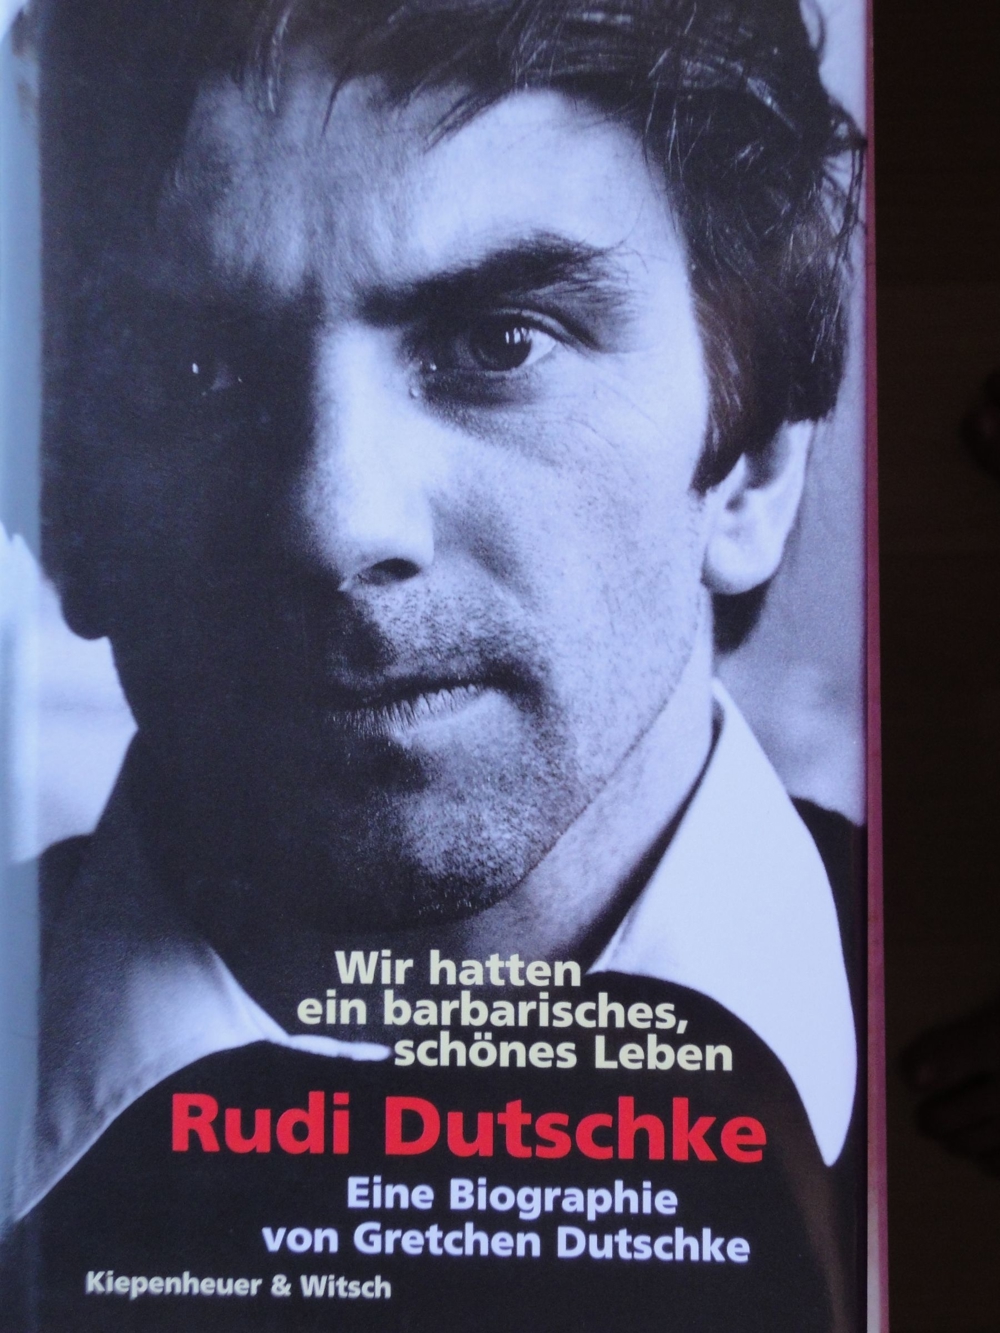 Gretchen Dutschke, Rudi Dutschke